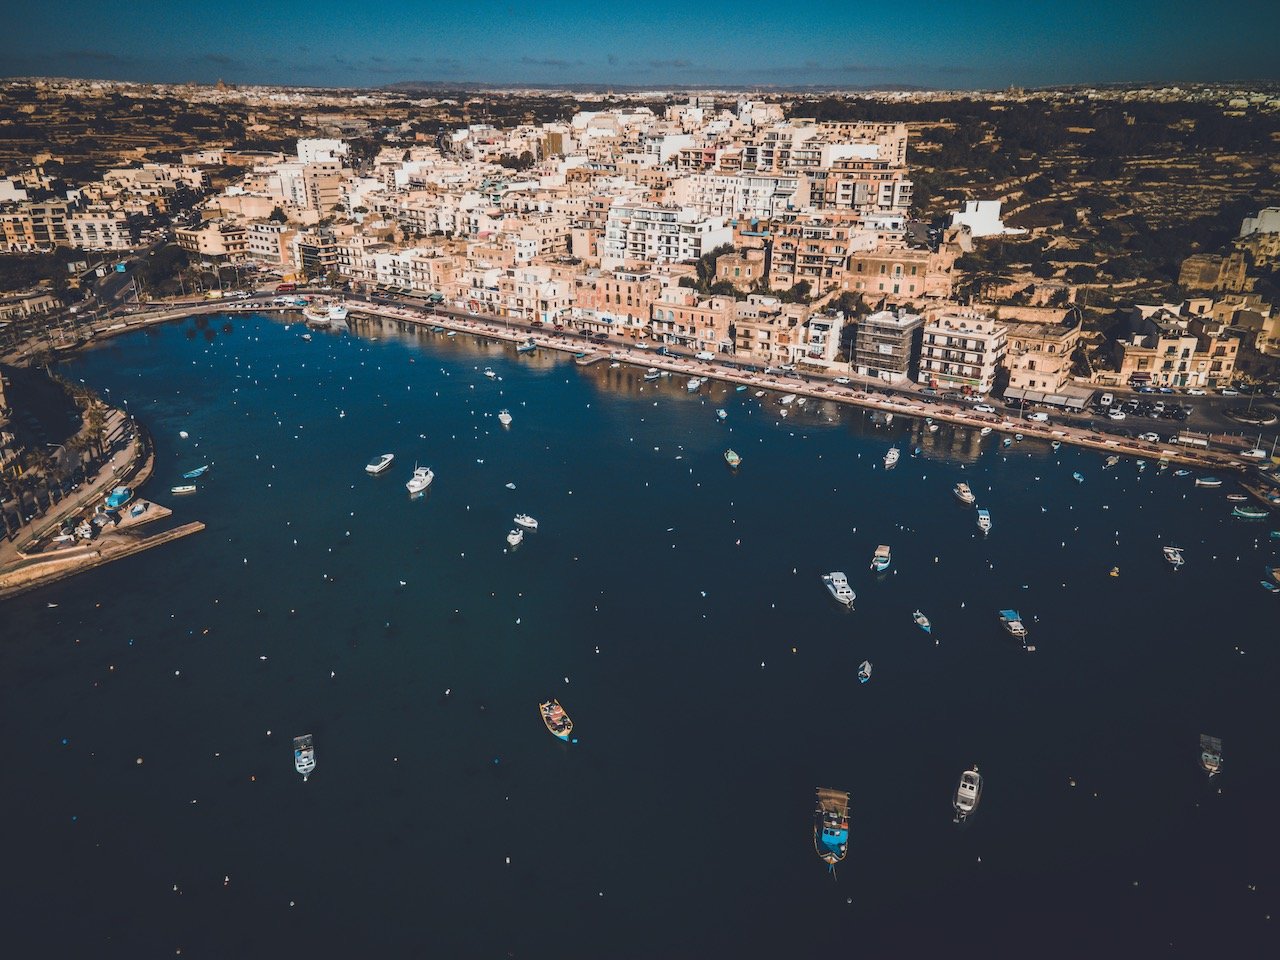   Marsaskala Harbor, Malta (ISO 100, 4.5 mm,  f /2.8, 1/25 s)  